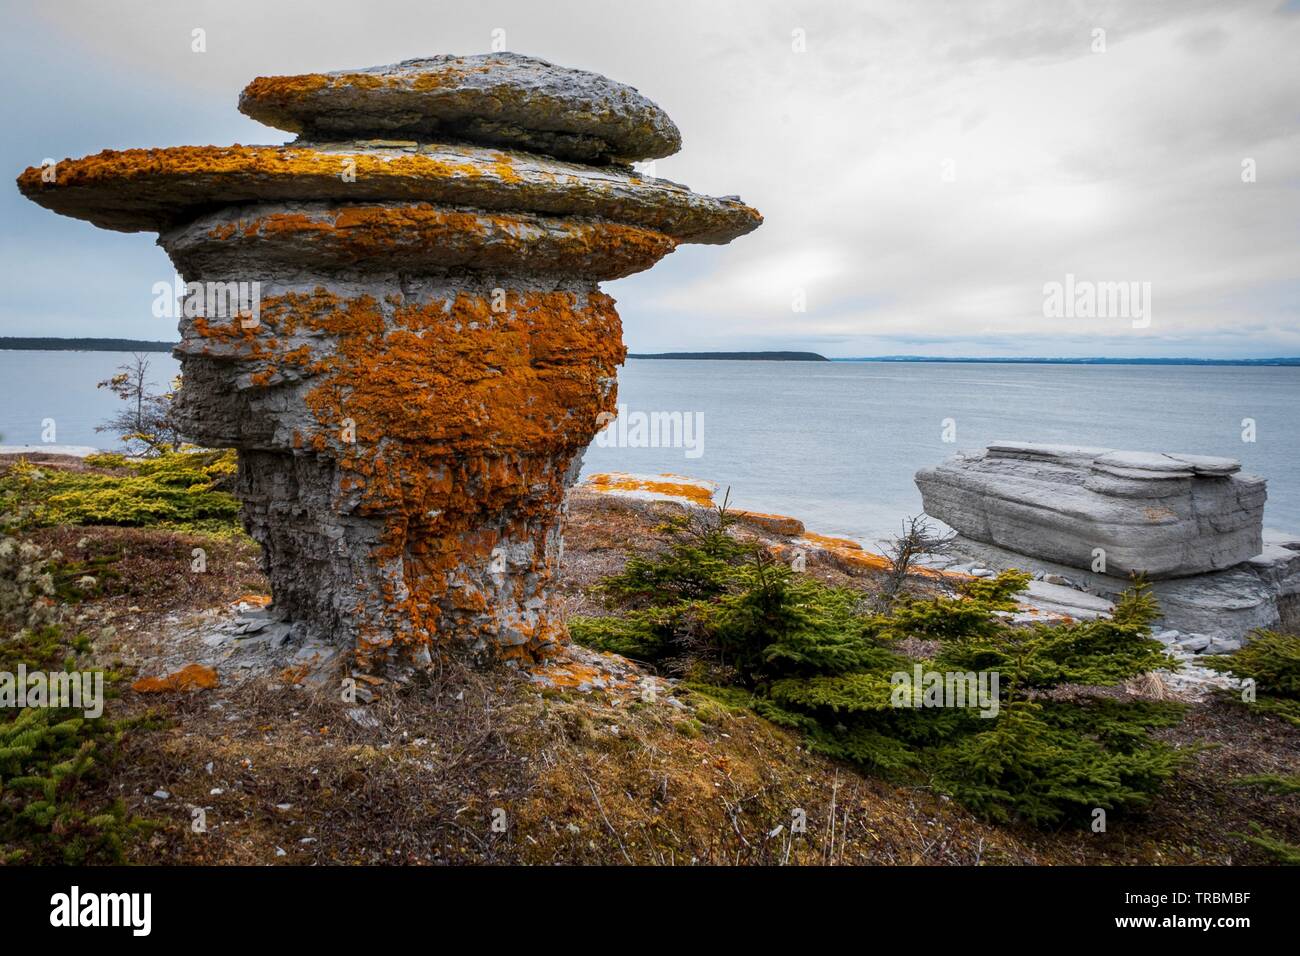 Couverts de lichens colorés monolithe dans la Réserve de parc national de l'archipel de Mingan, au Québec, Canada. Banque D'Images